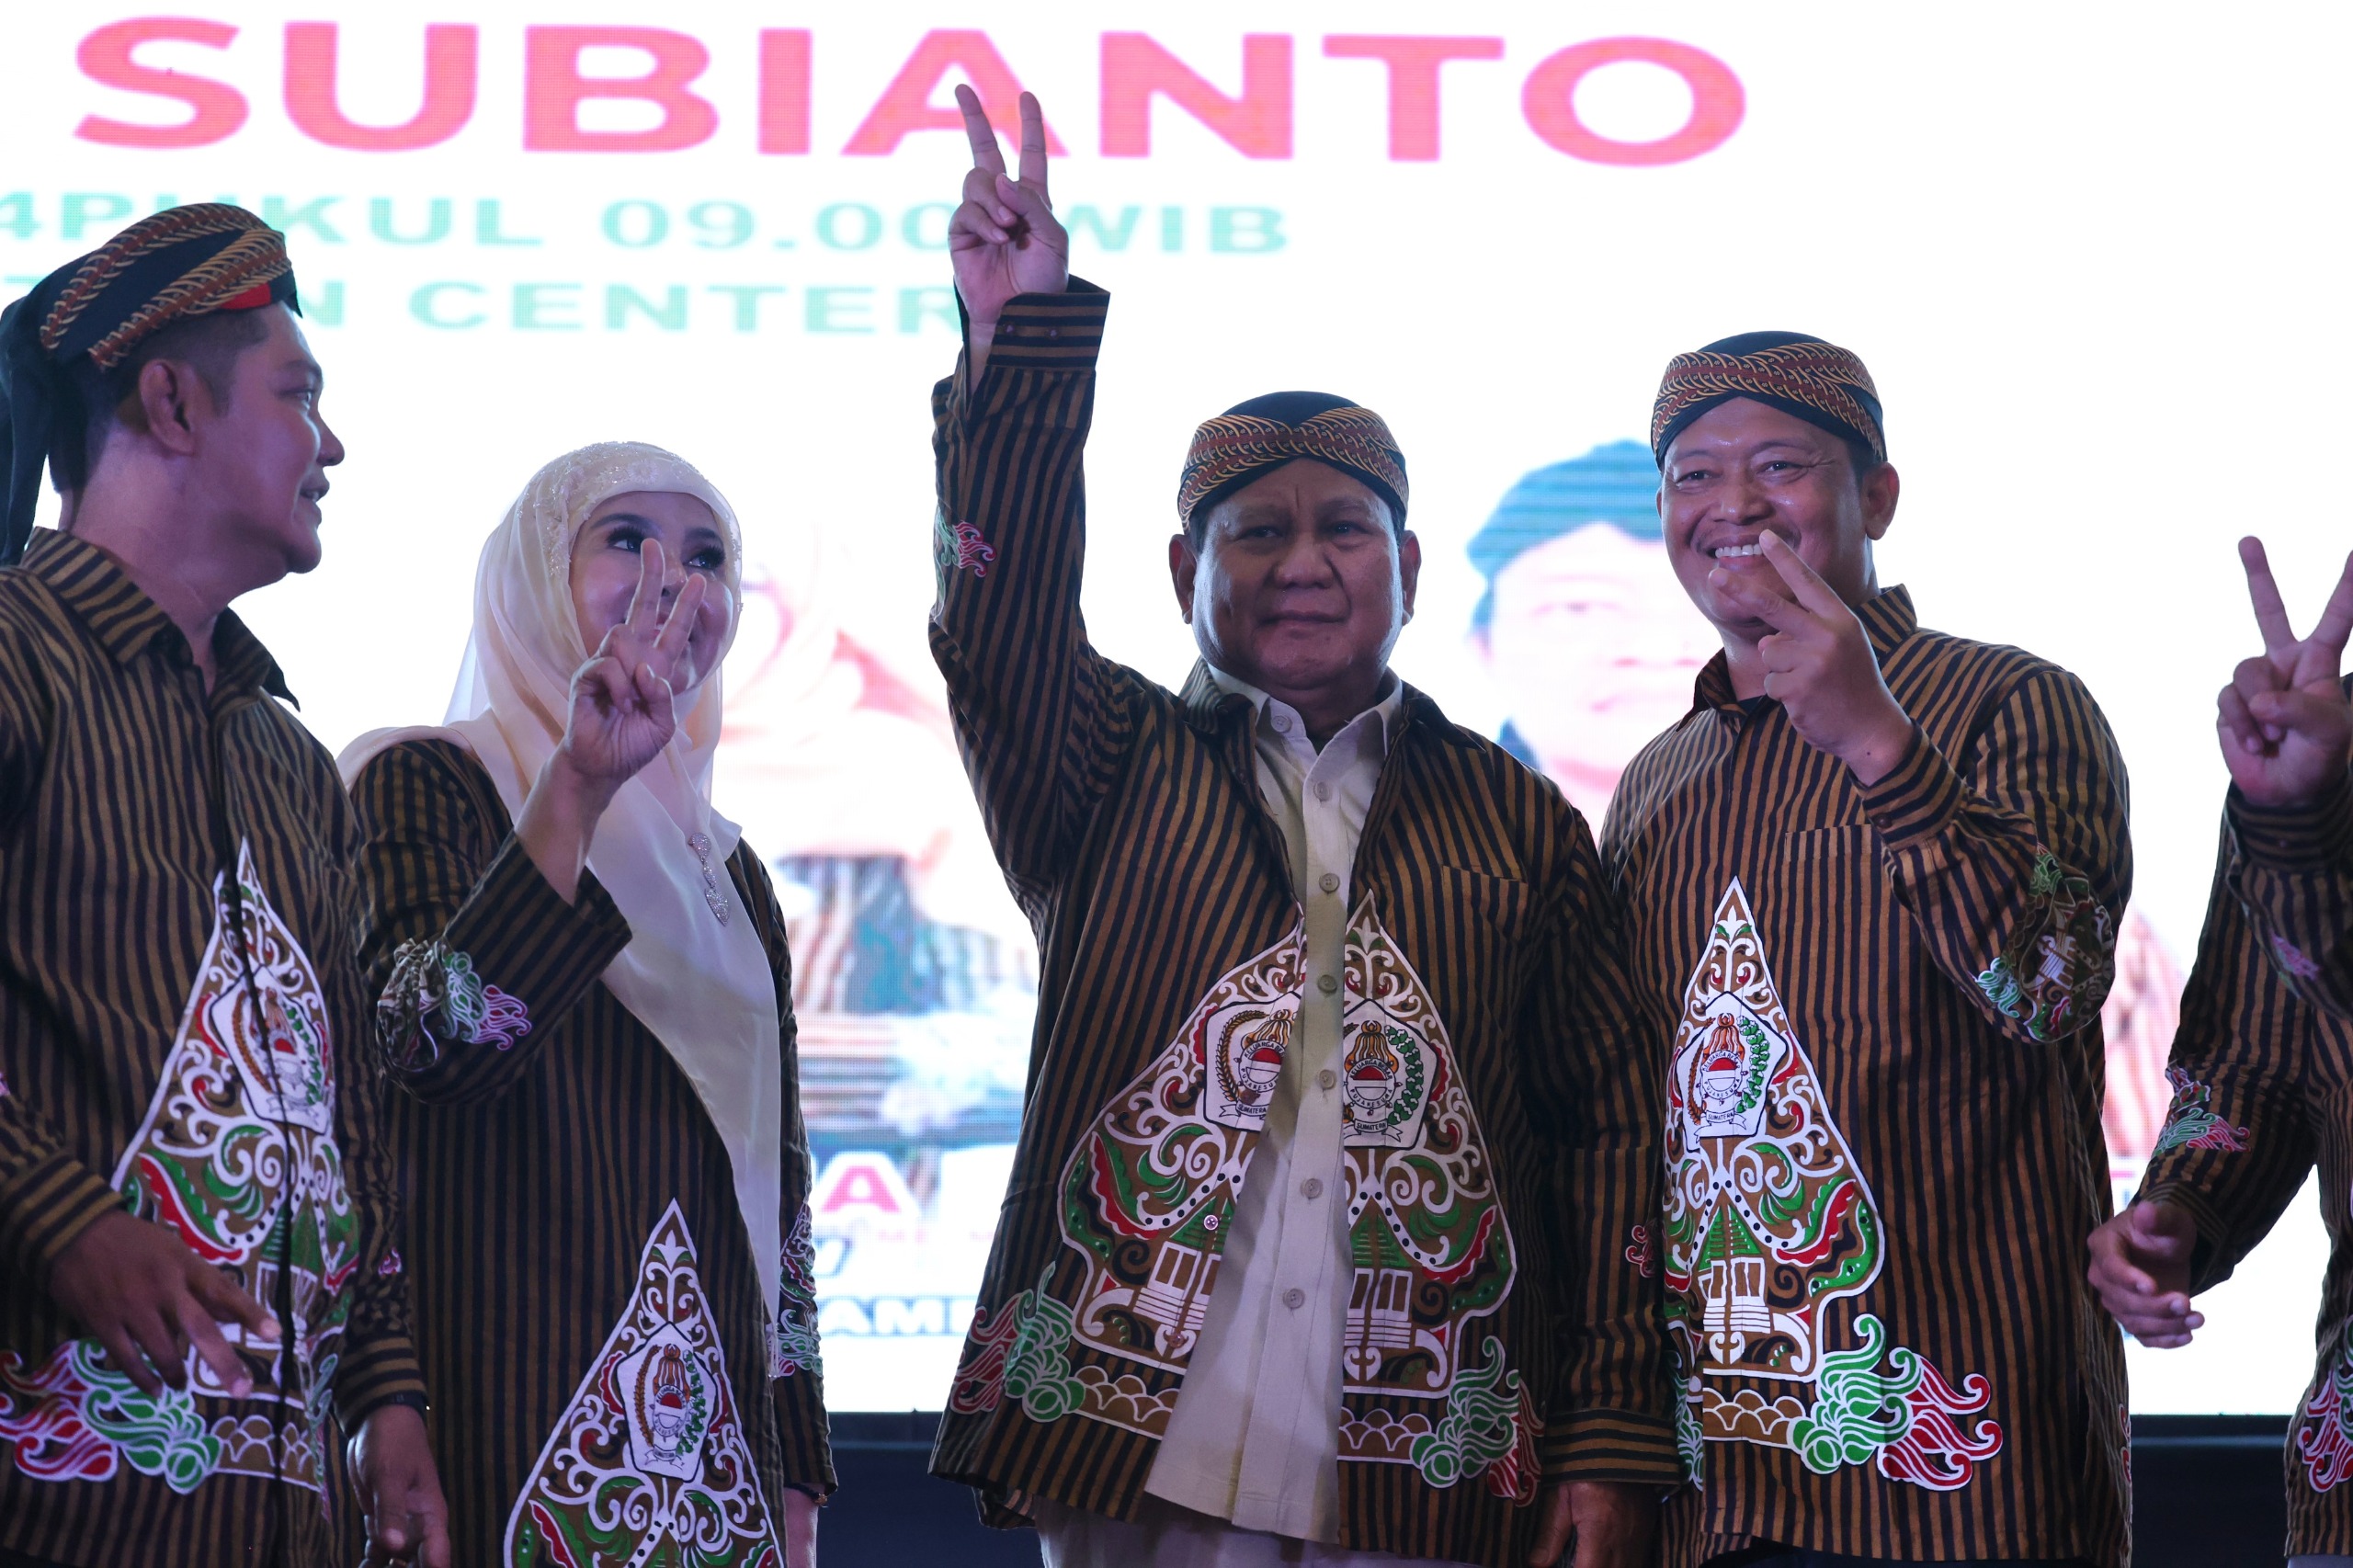 Pujakesuma Deklarasi Dukung Prabowo, Alasannya Prabowo Orang Paling Ikhlas untuk Indonesia